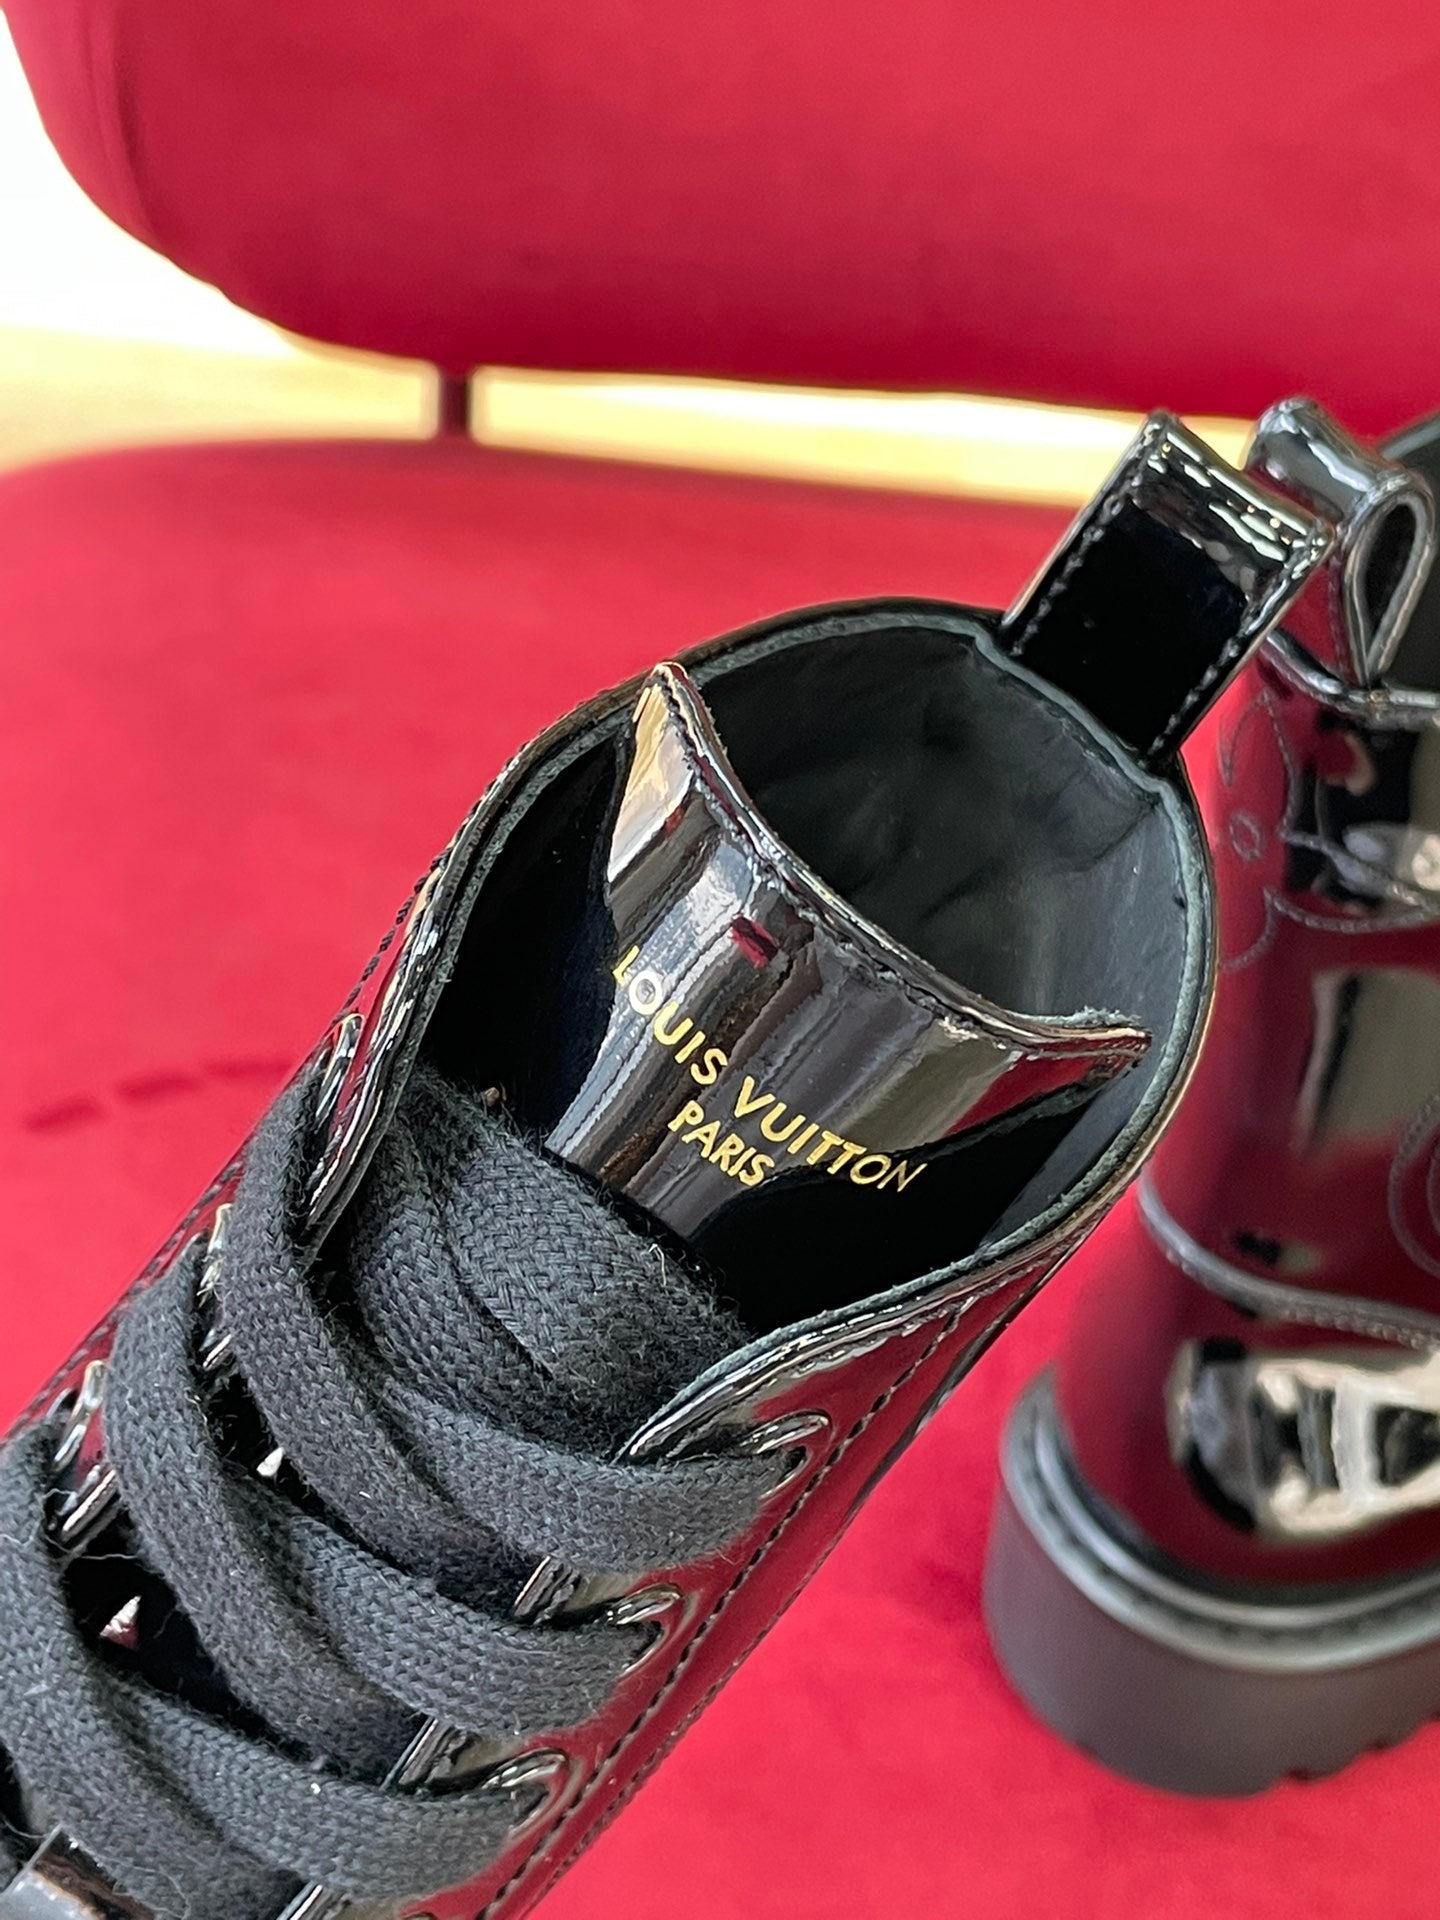 Louis Vuitton Territory Flat Ranger Boots (1A9HAK)